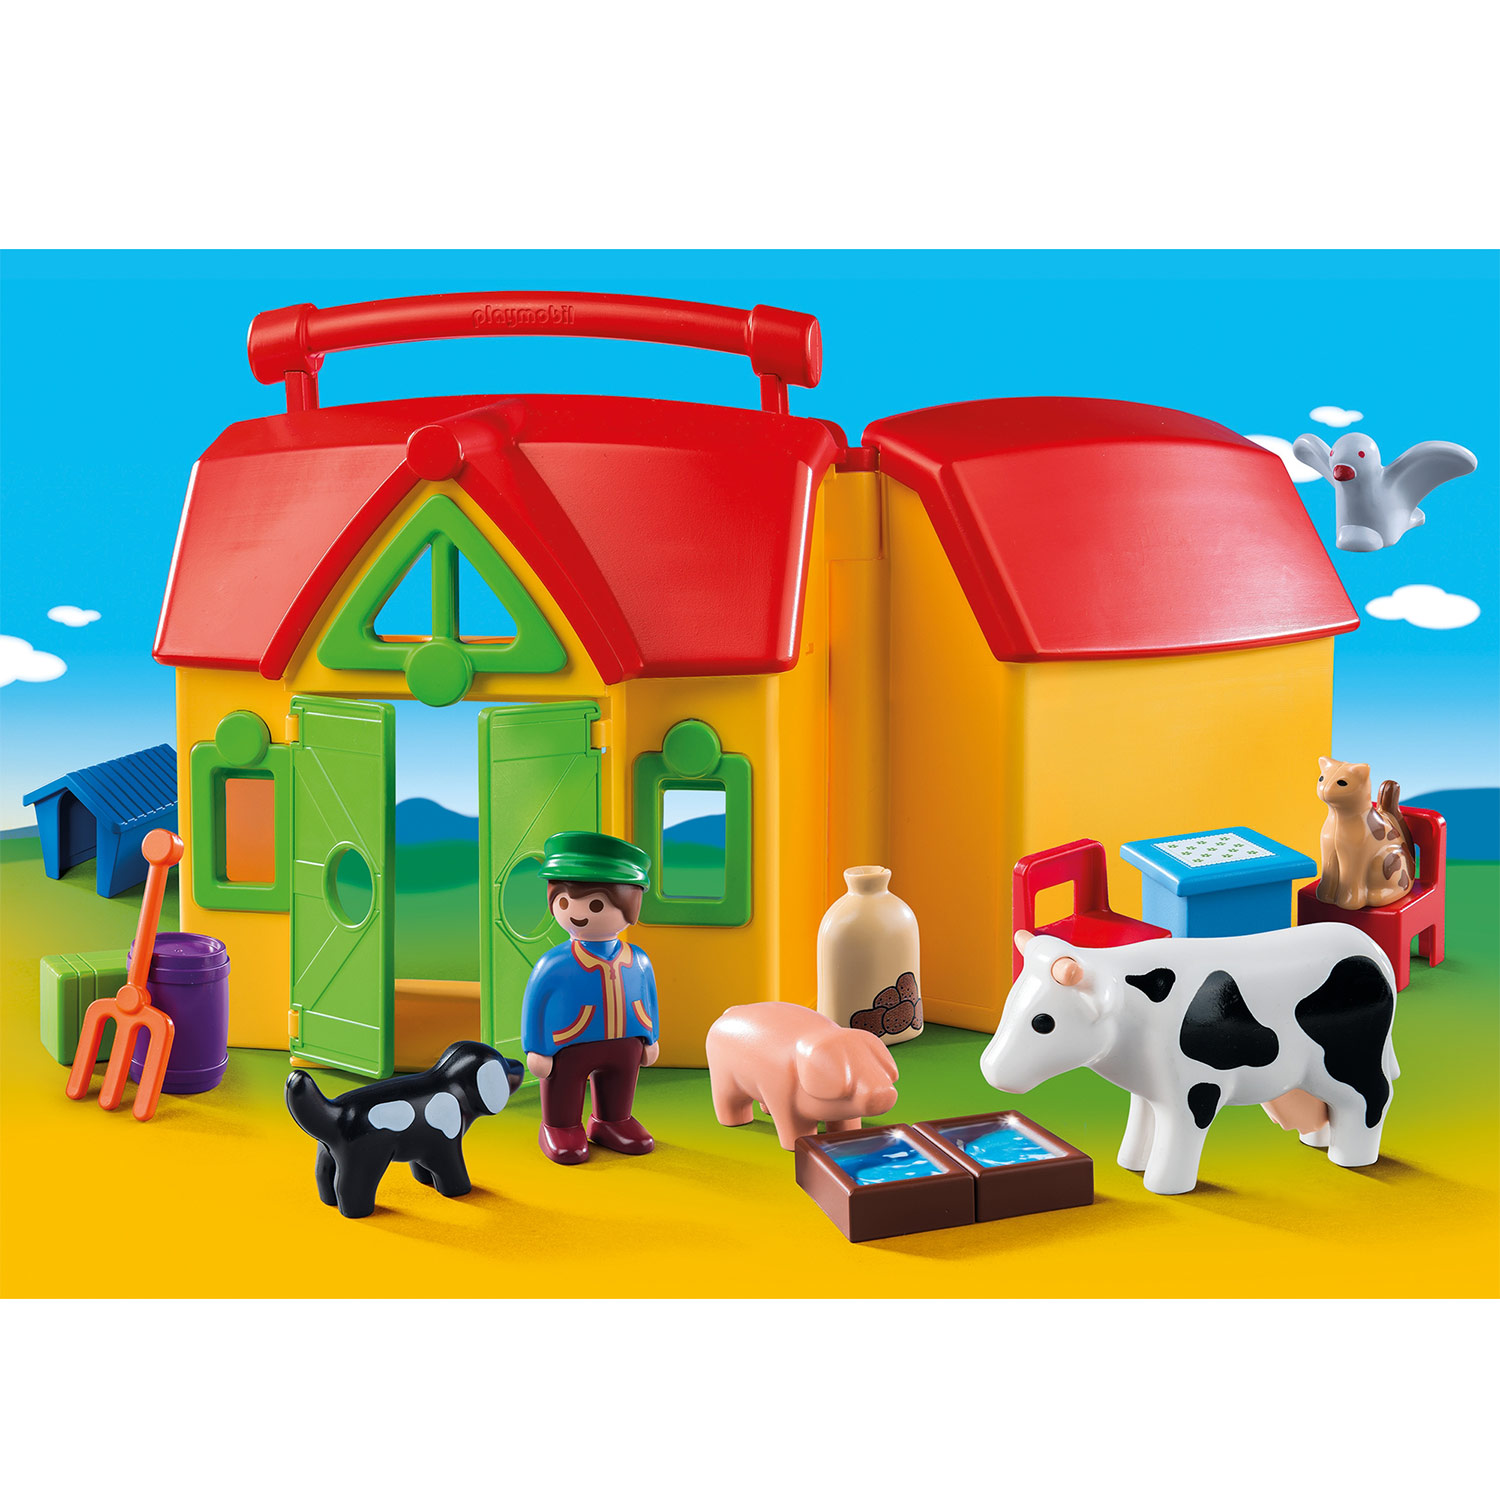 Playmobil 1.2.3. Bauernhof zum Mitnehmen mit Tieren - 6962